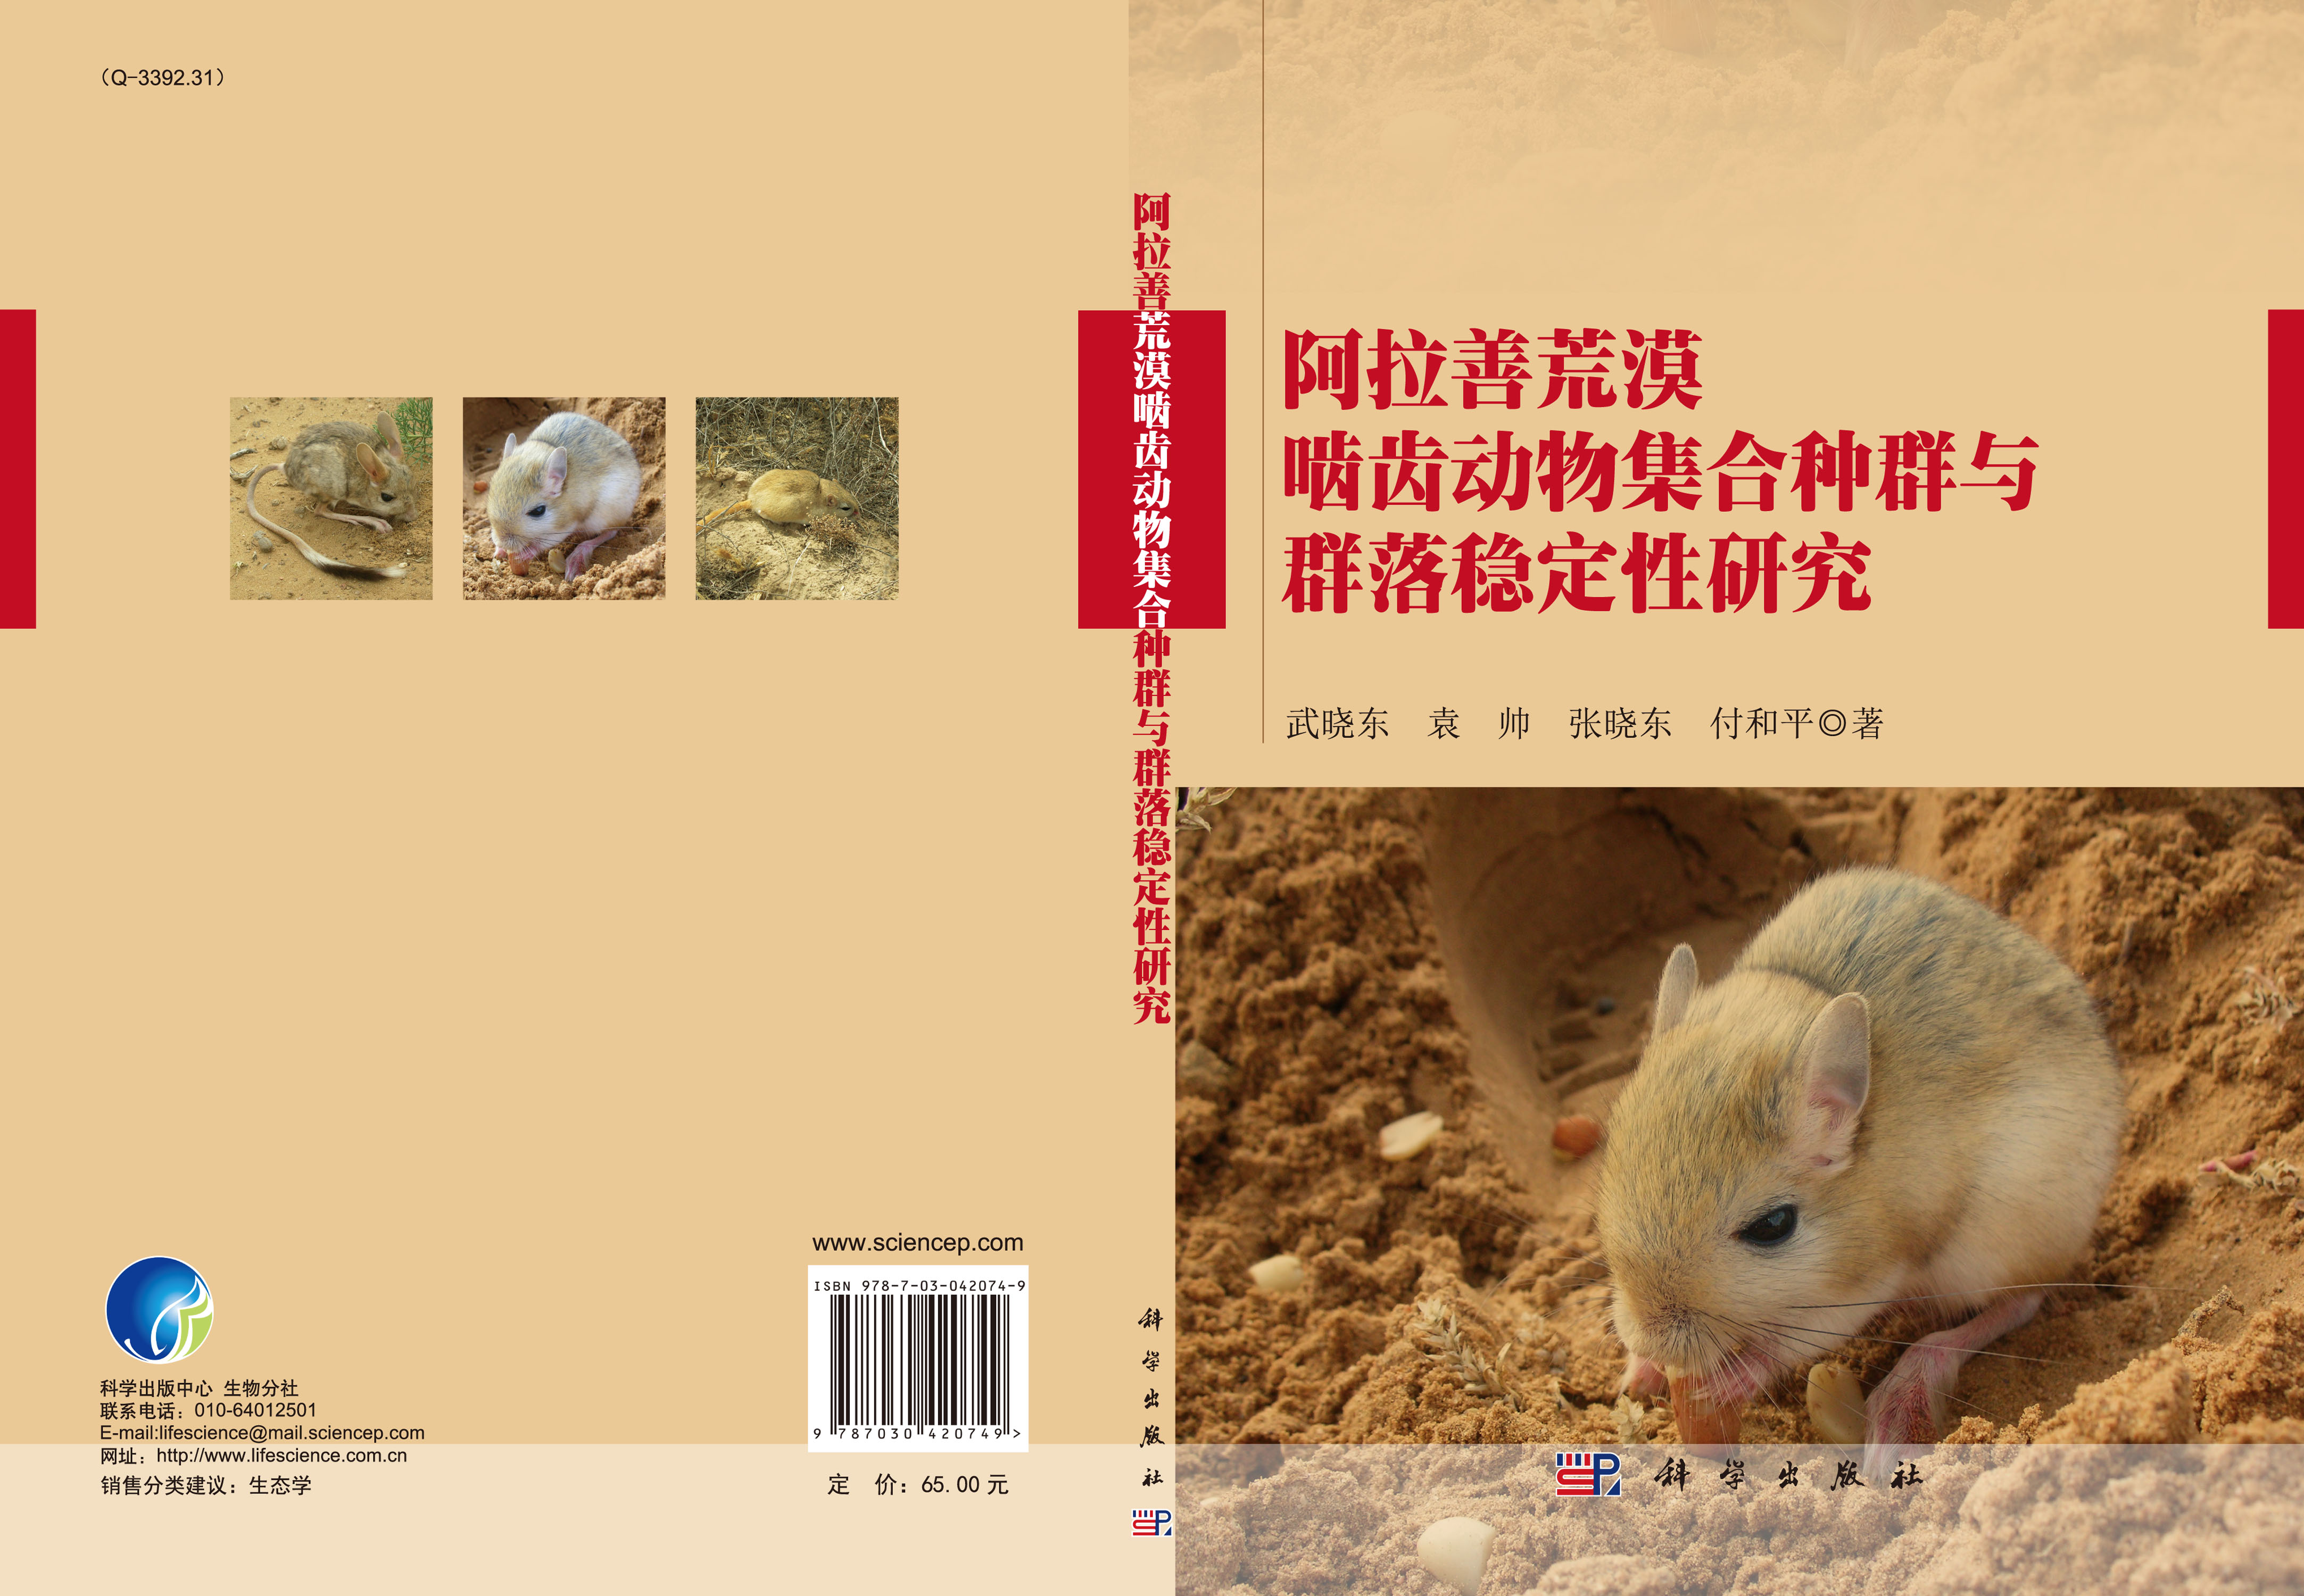 阿拉善荒漠啮齿动物集合种群与群落稳定性研究